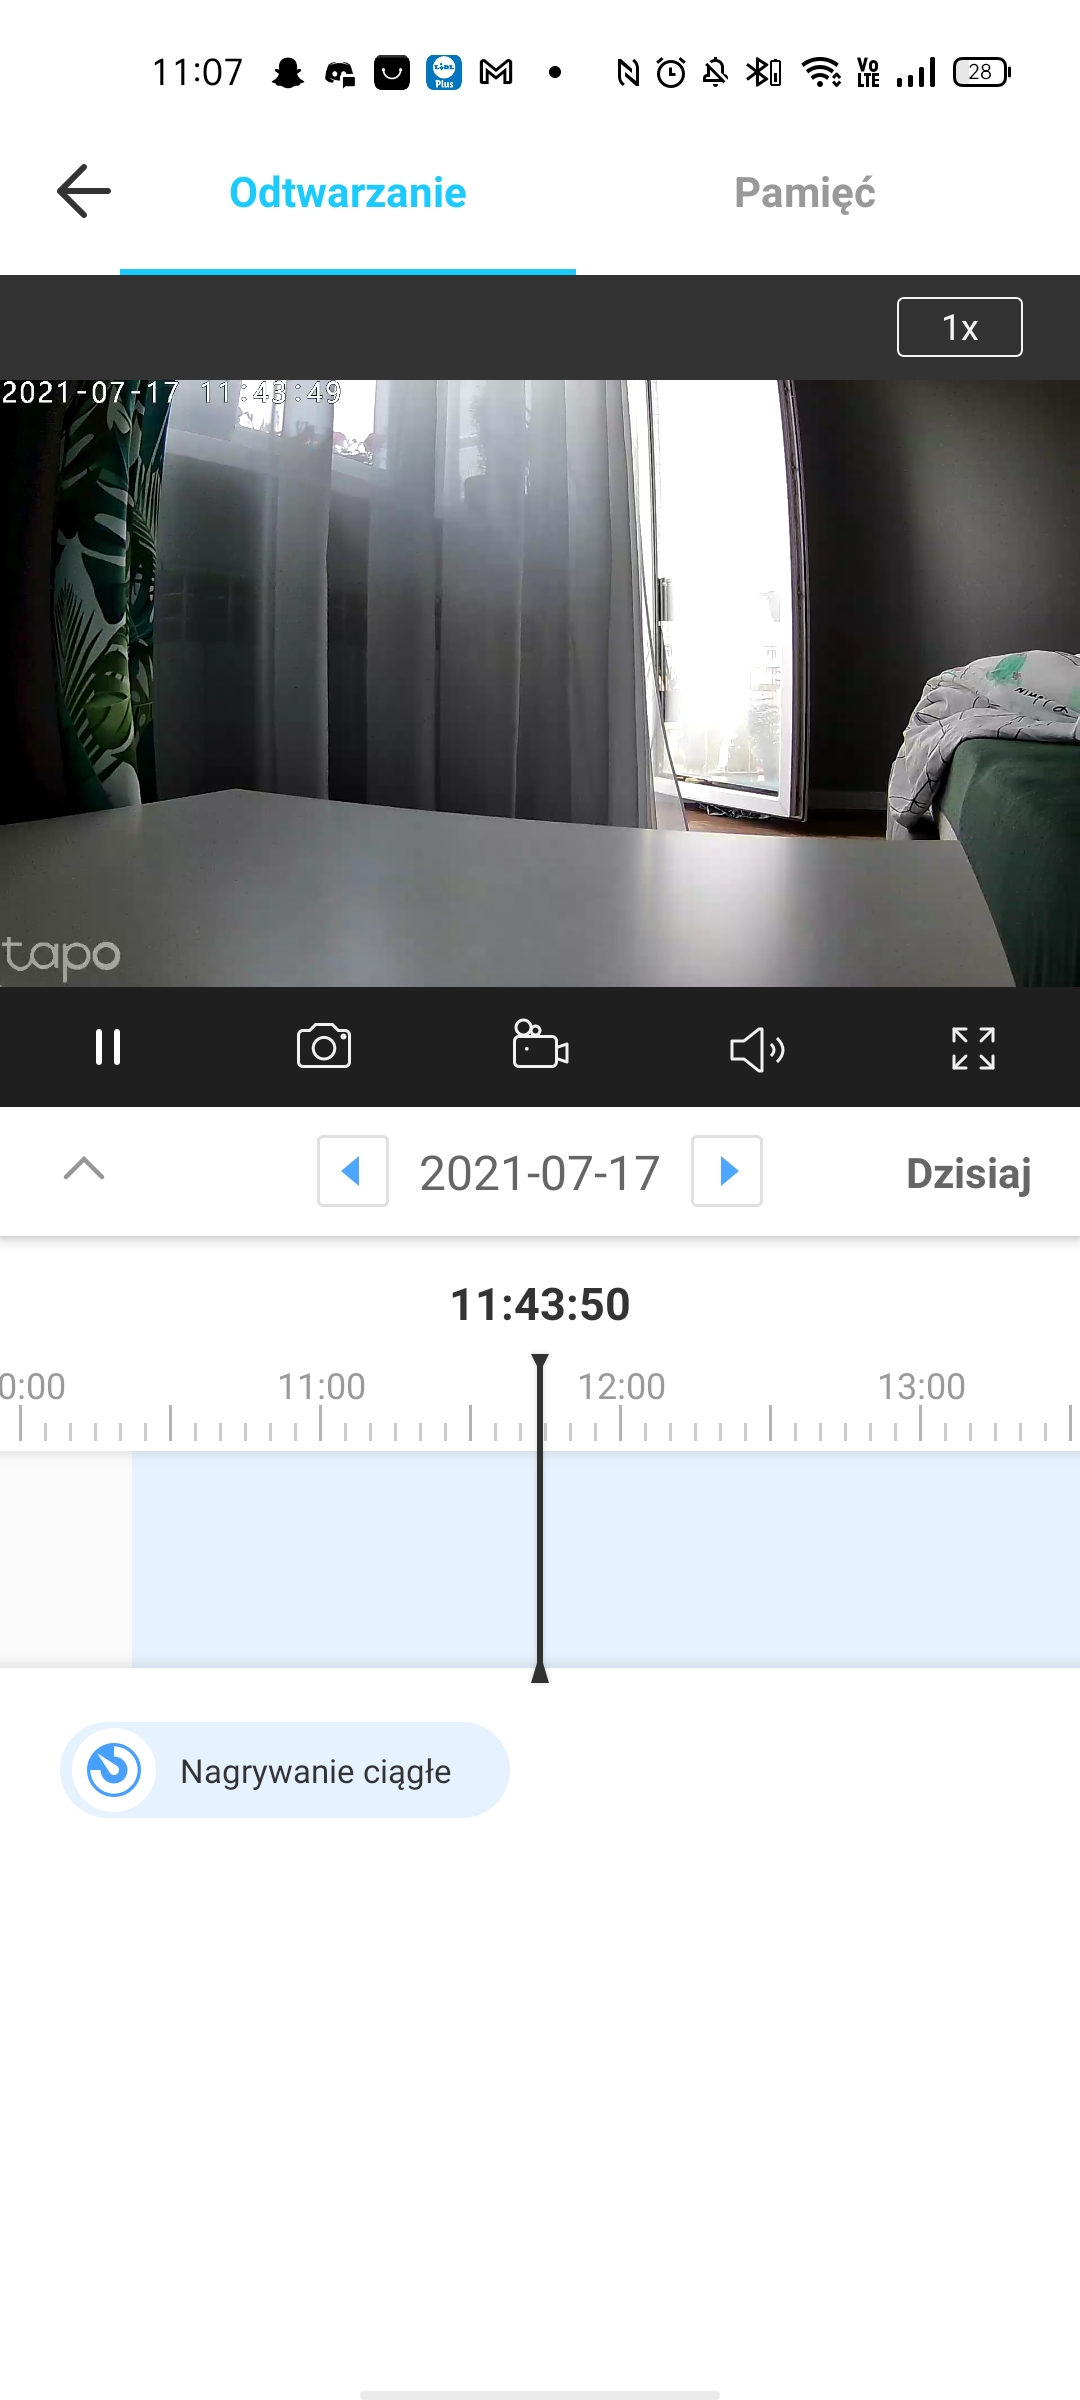 Recenzja TP-Link Tapo C210, czyli przyjemnej kamerki do domowego monitoringu